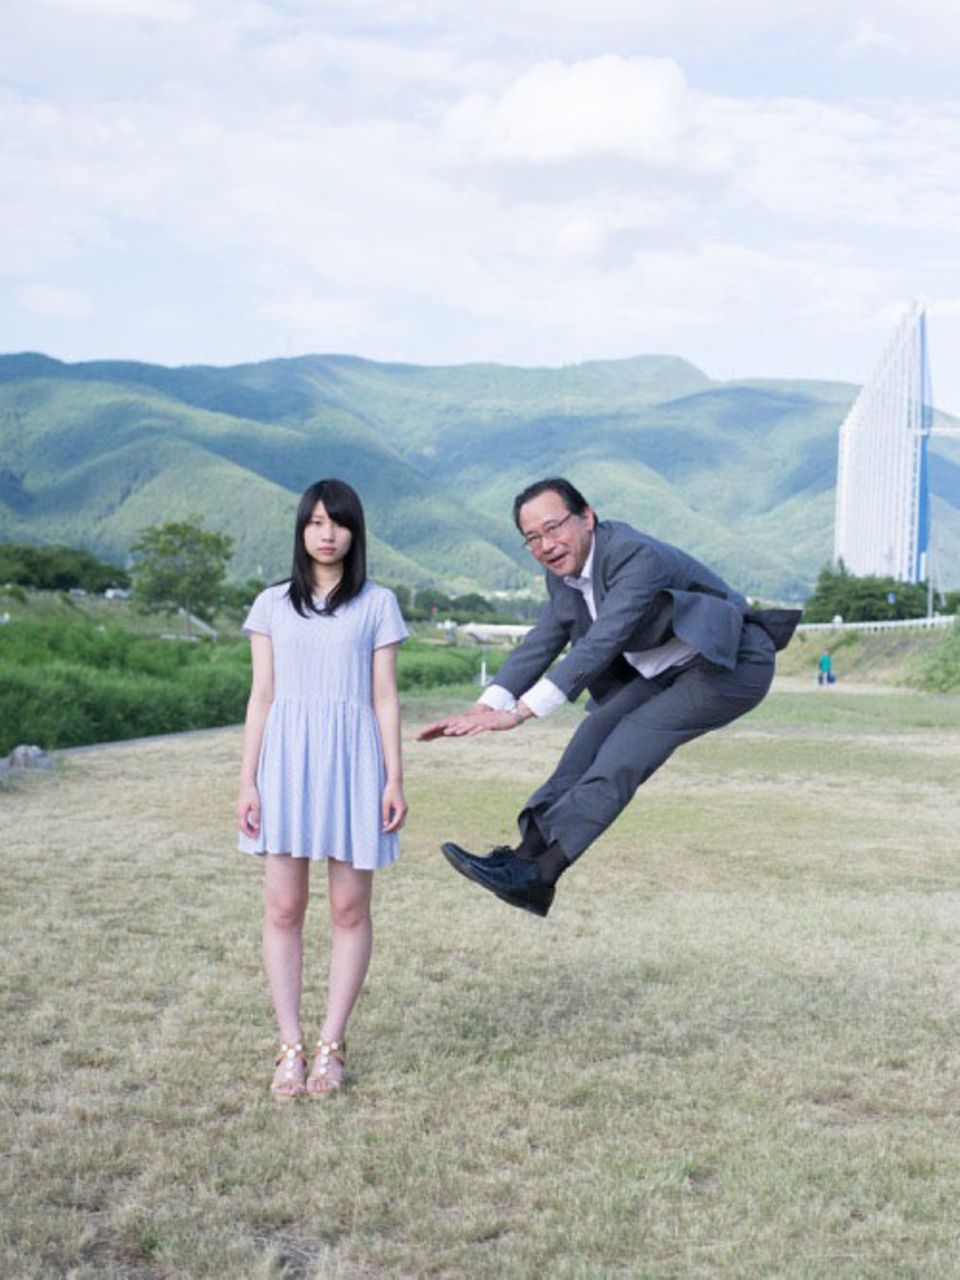 Der japanische Fotograf Yuki Aoyama hat diese ganz eigene Vater-Tochter-Dynamik in einer Fotoserie eingefangen, die mal ein ganz anderes Licht auf die ernsten Anzugträger wirft.